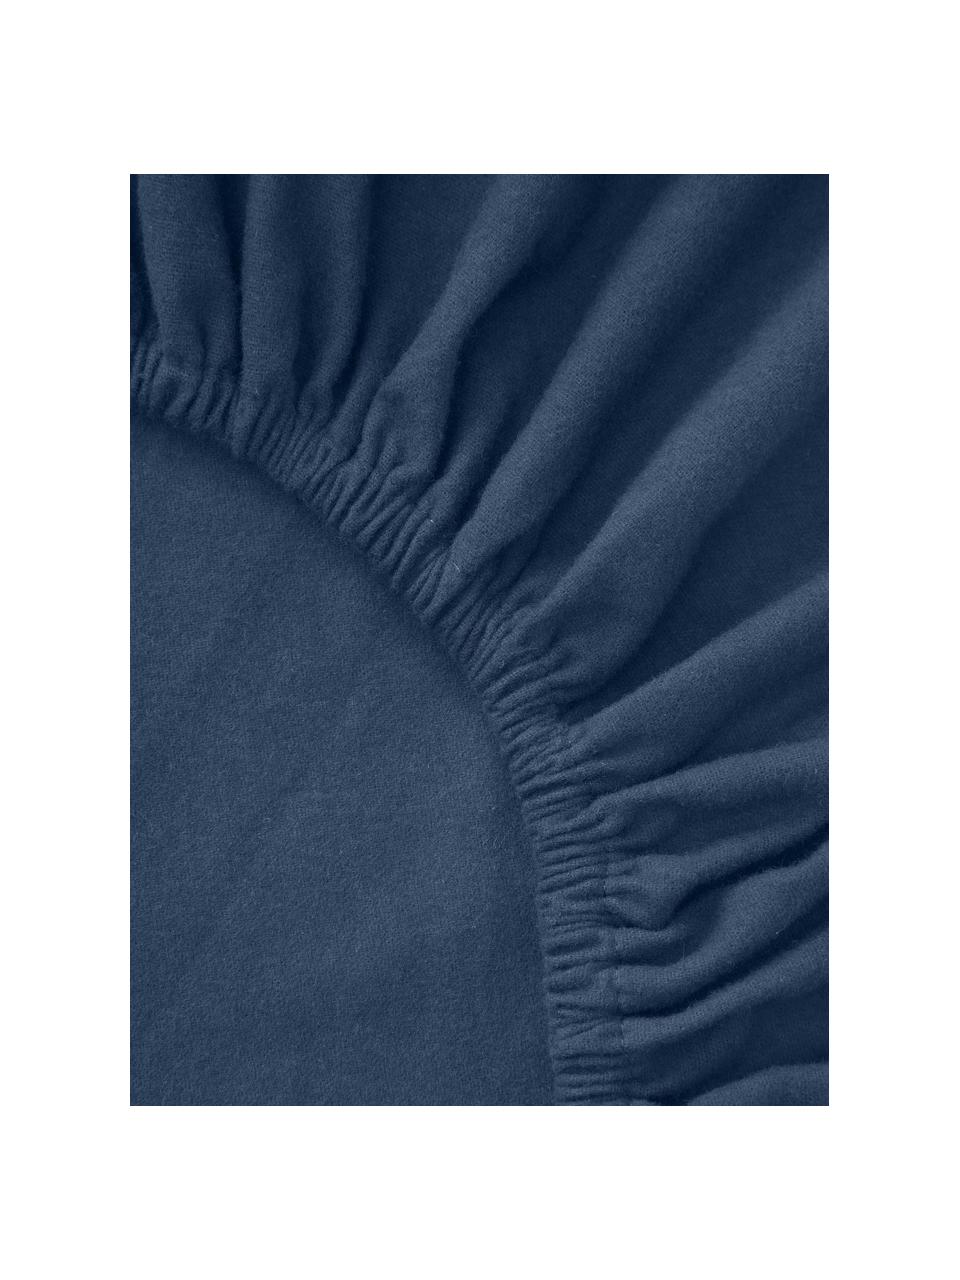 Drap-housse en flanelle pour surmatelas Biba, Bleu foncé, larg. 200 x long. 200 cm, haut. 15 cm